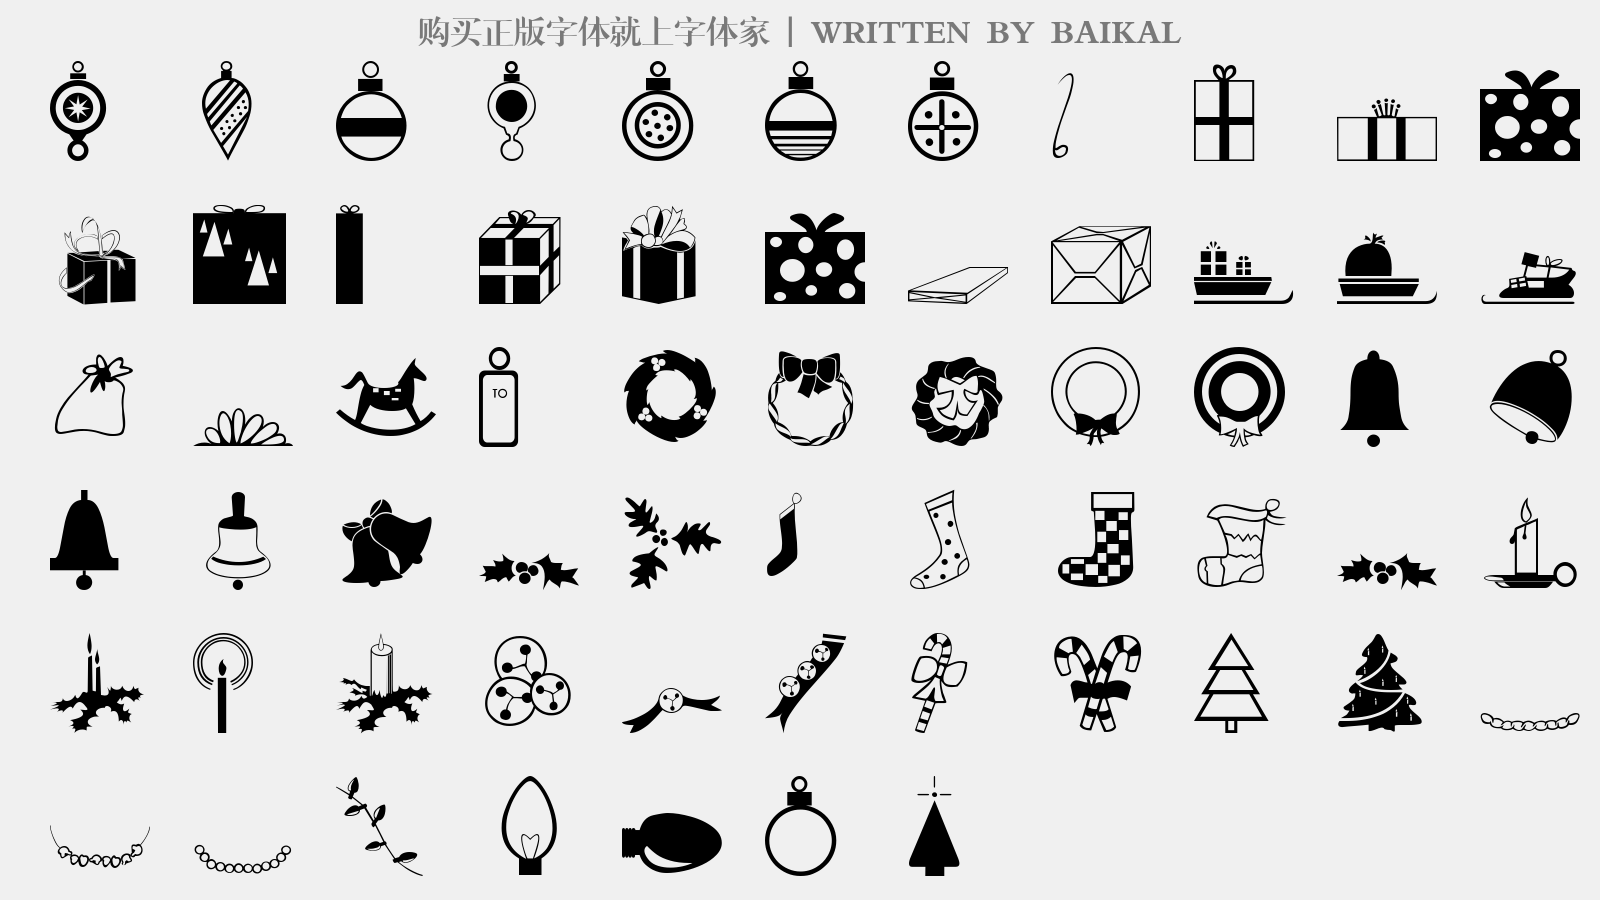 BAIKAL - 大写字母/小写字母/数字